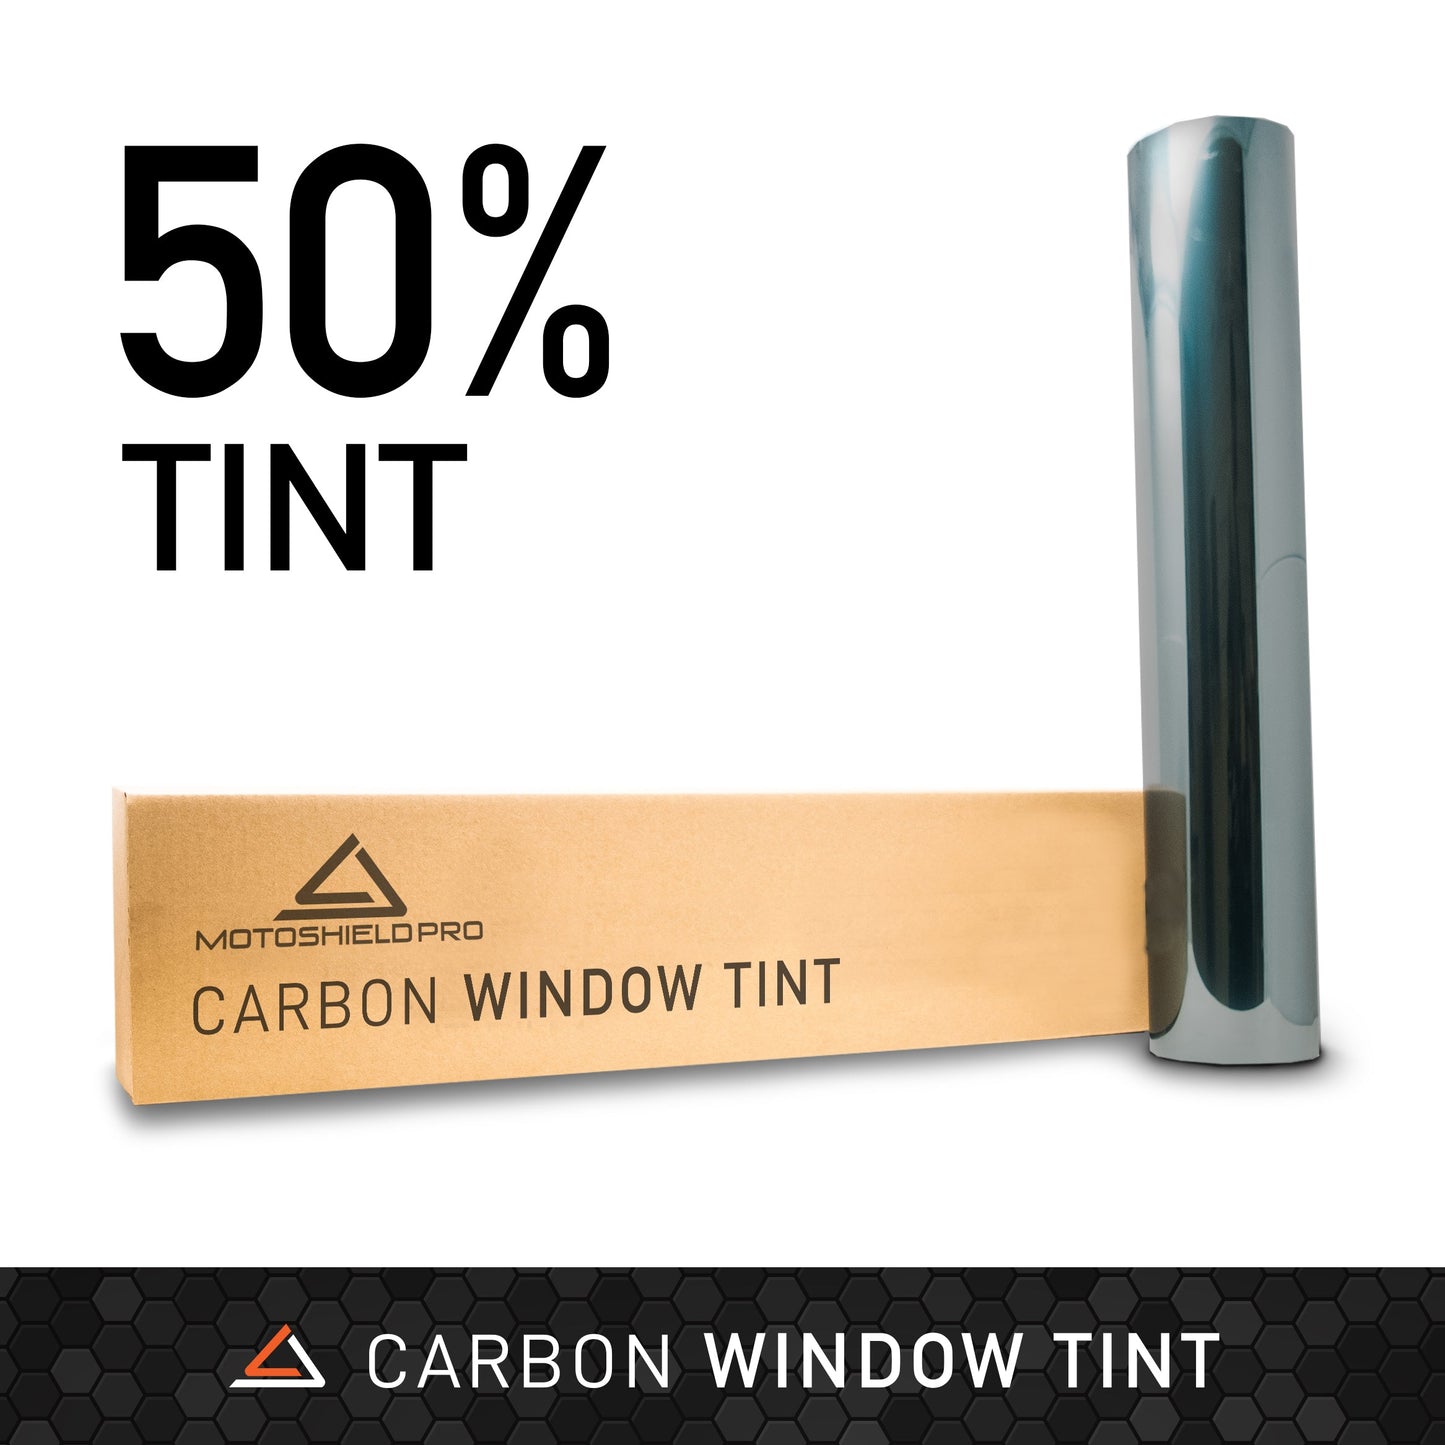 MotoShield Pro Carbon Window Tint - 30" in x 100' ft Roll + Lifetime Warranty